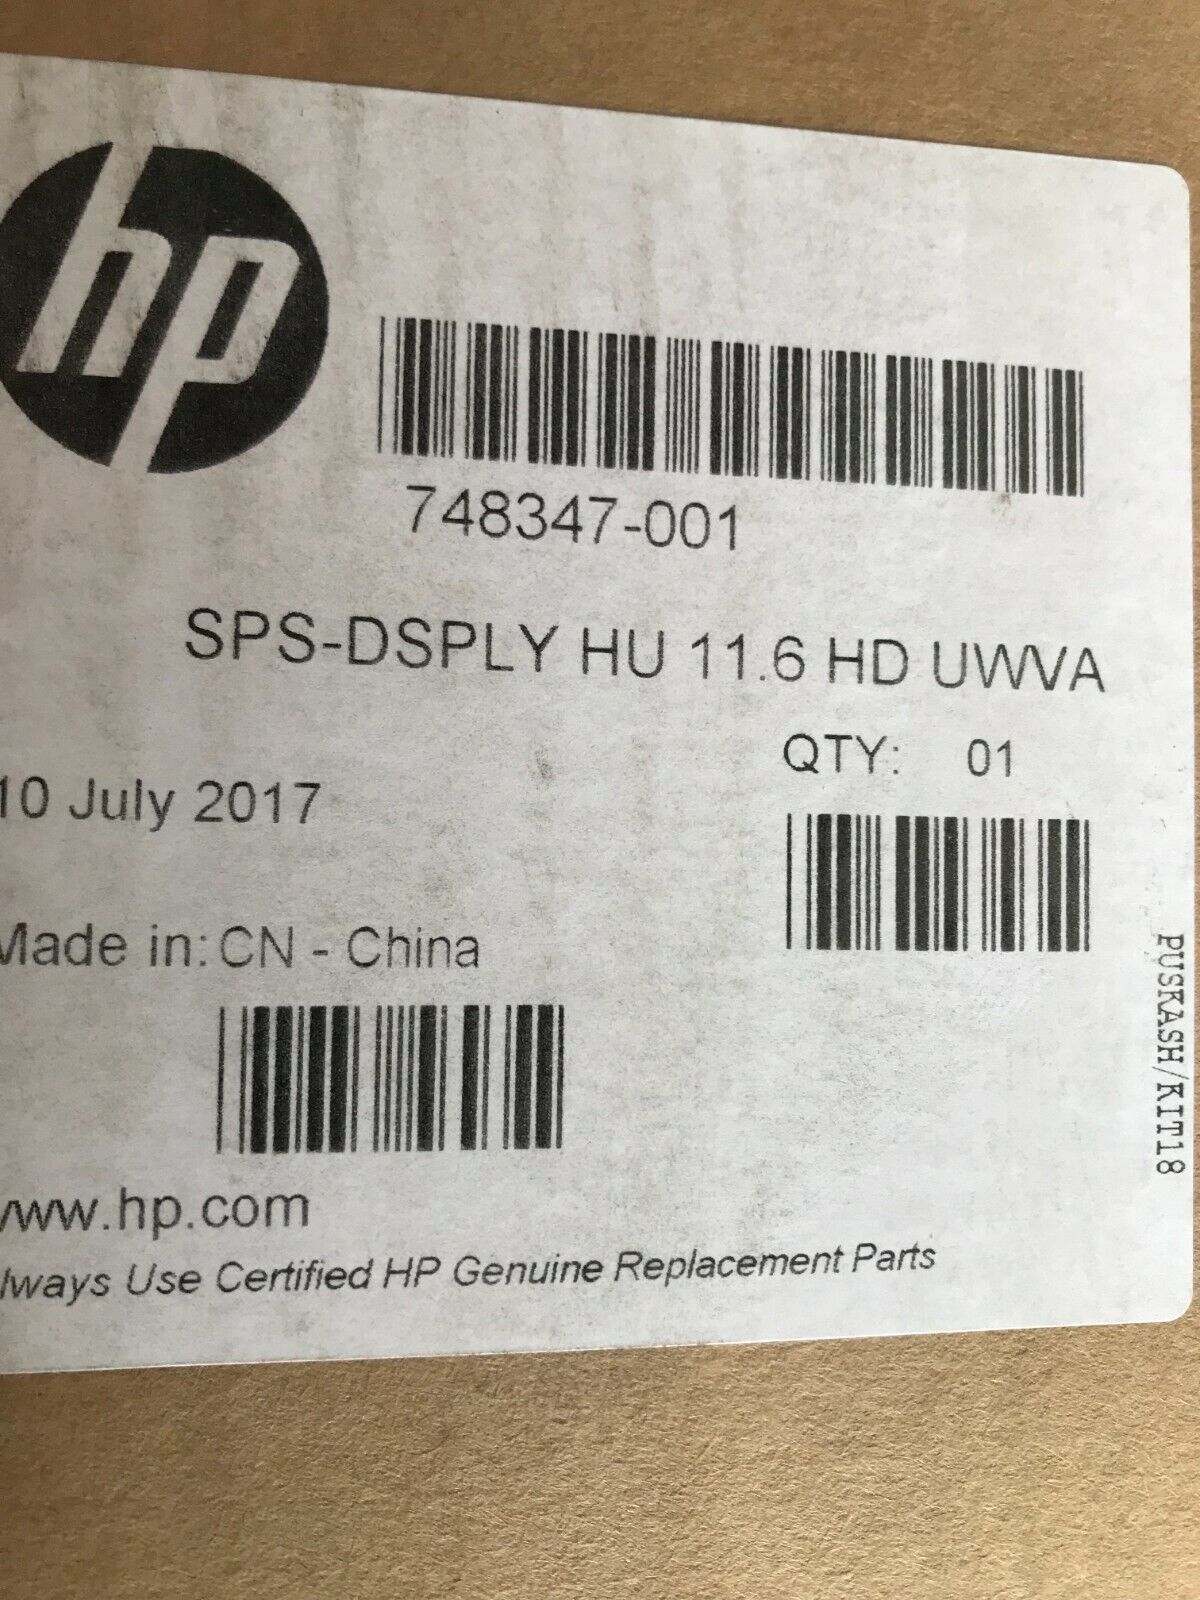 NEW GENUINE HP 748347-001 DISPLAY HU 11.6 HD UWVA AG w ELITEBOOK 810